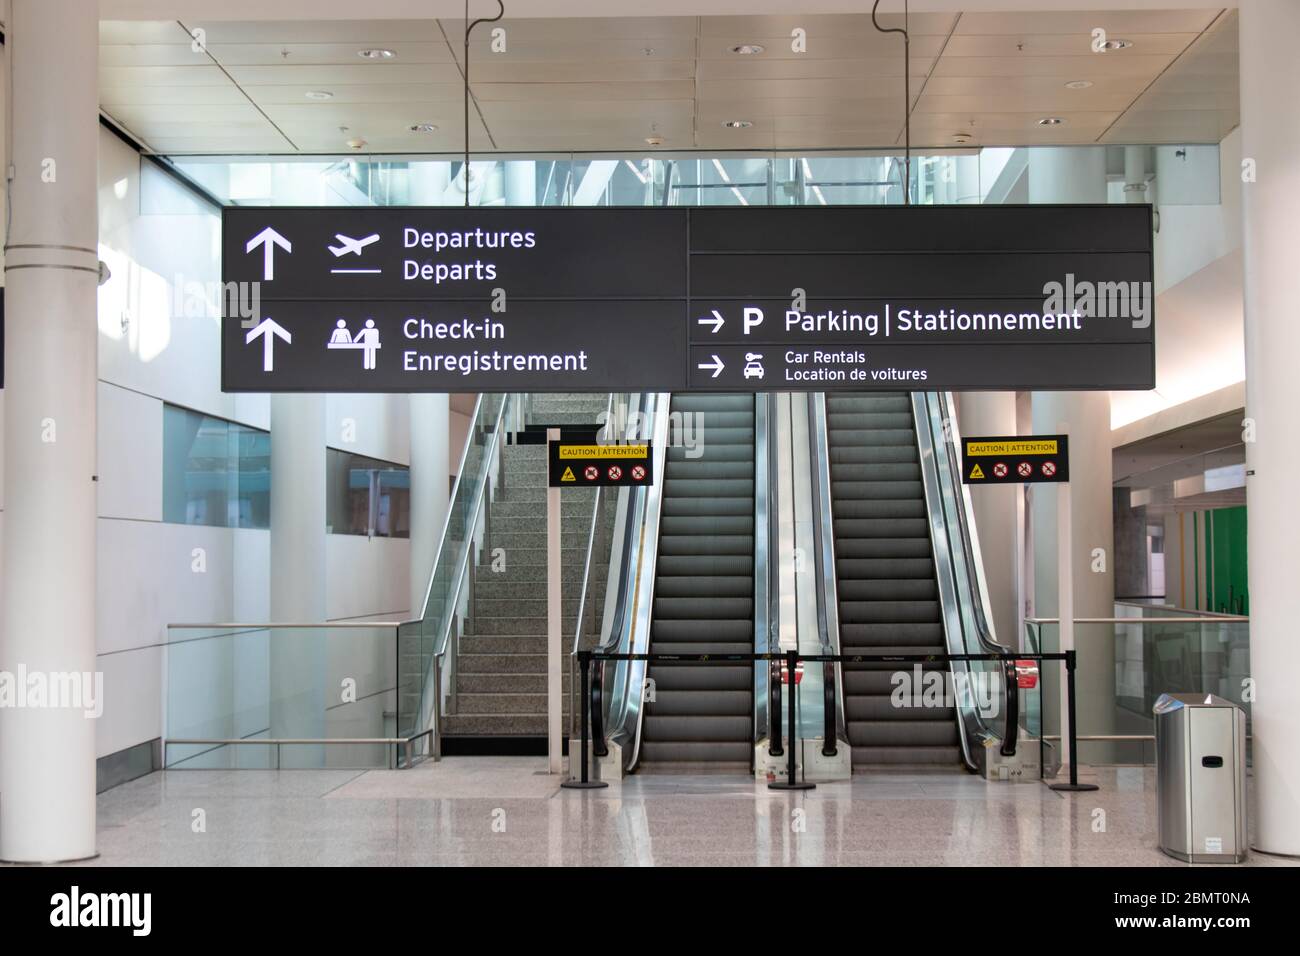 Chiusa all'interno del Toronto Pearson Terminal 1, in quanto l'industria aeronautica affronta l'impatto della pandemia COVID-19 (Coronavirus). Foto Stock